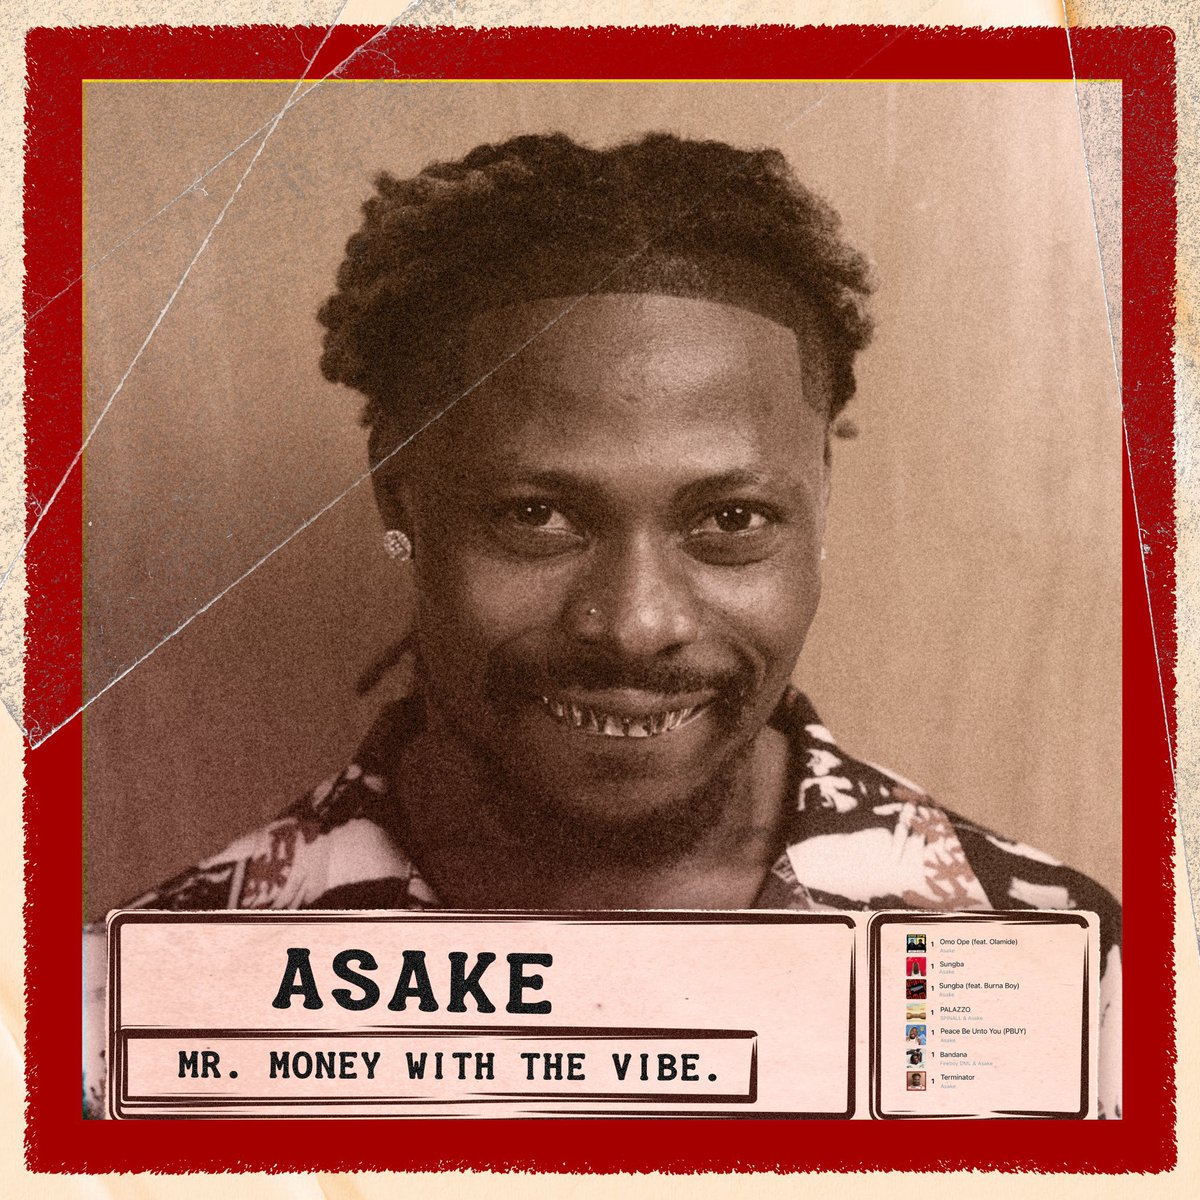 Deux albums en moins d’un an pour Asake… C’est fort quand même.

Vos avis sur le nouvel album ?👀